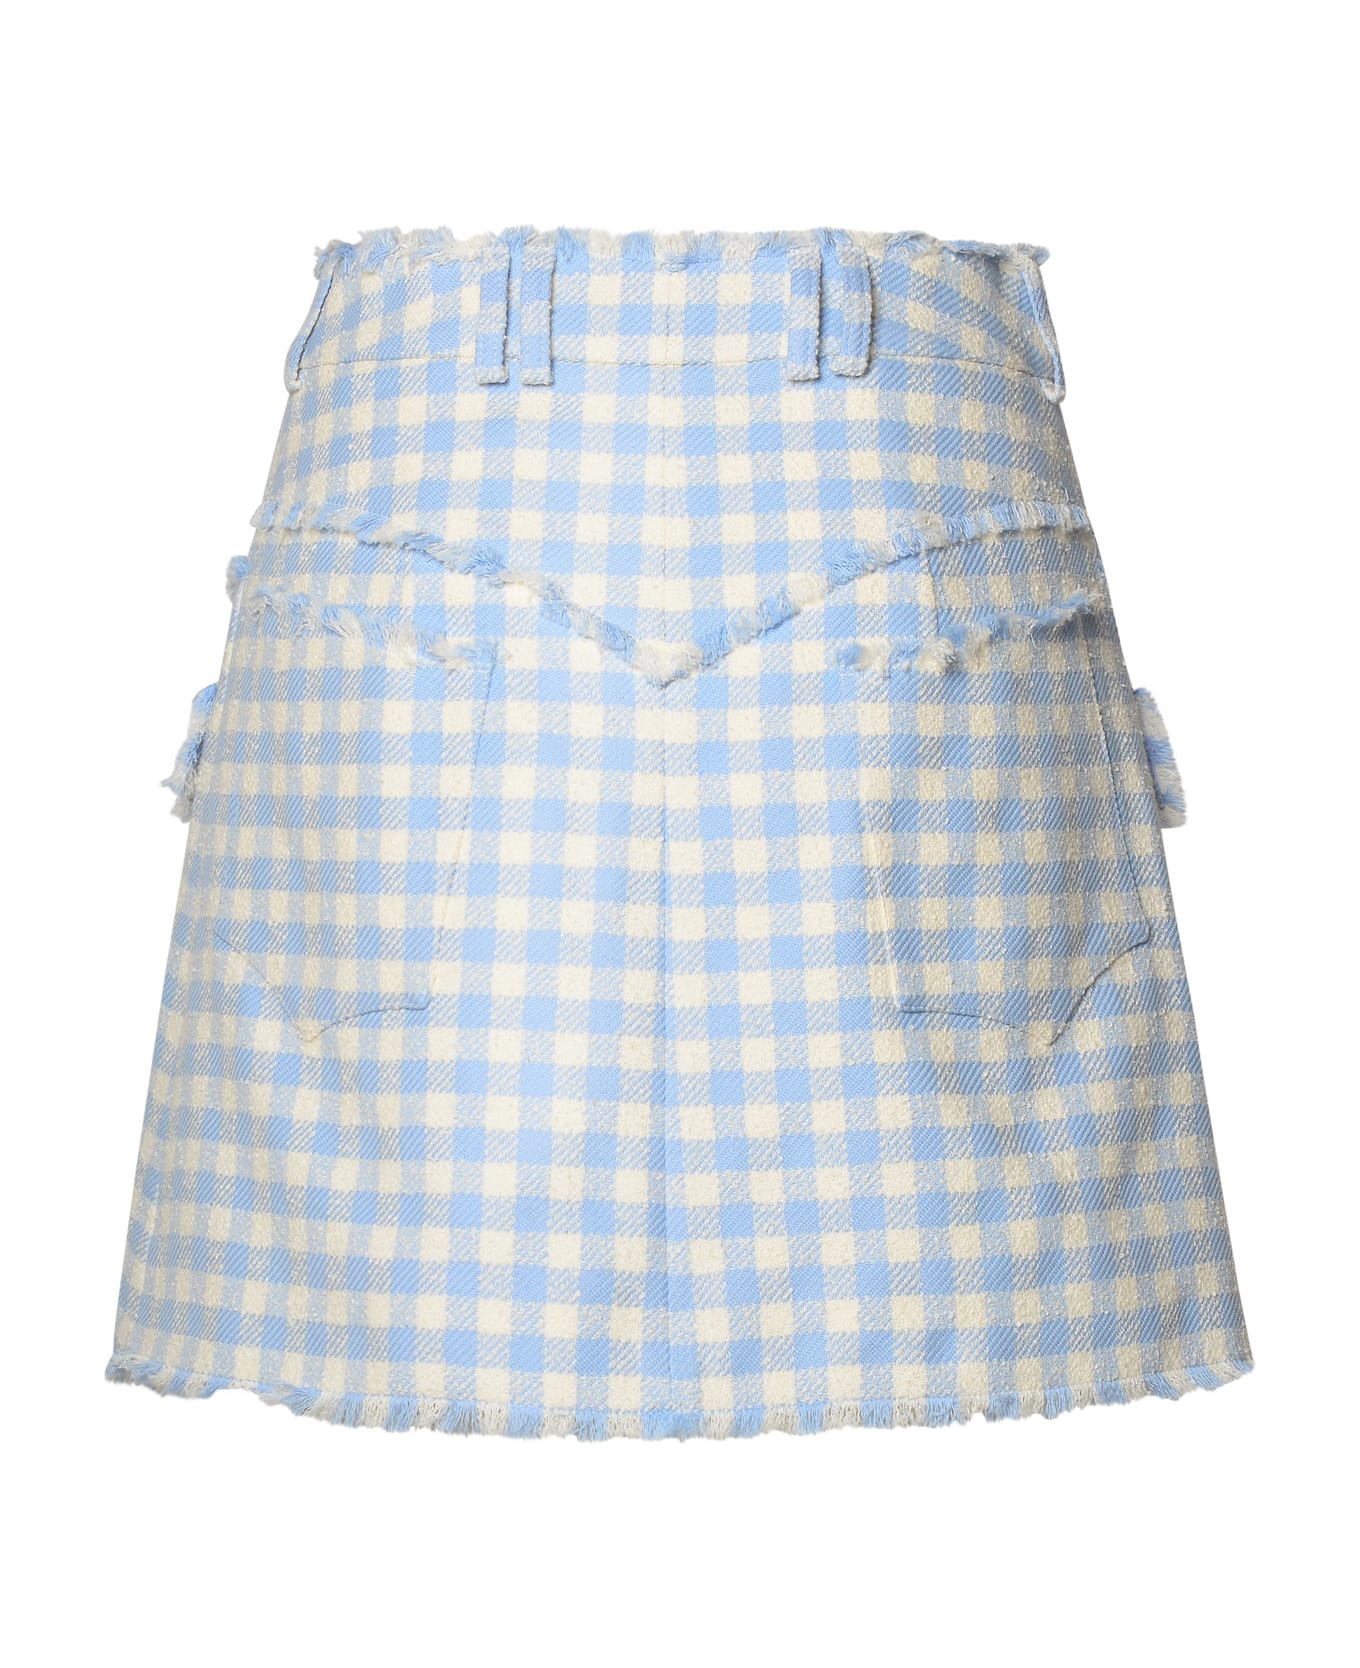 Balmain Two-tone Cotton Skirt - Bleu pale/blanc